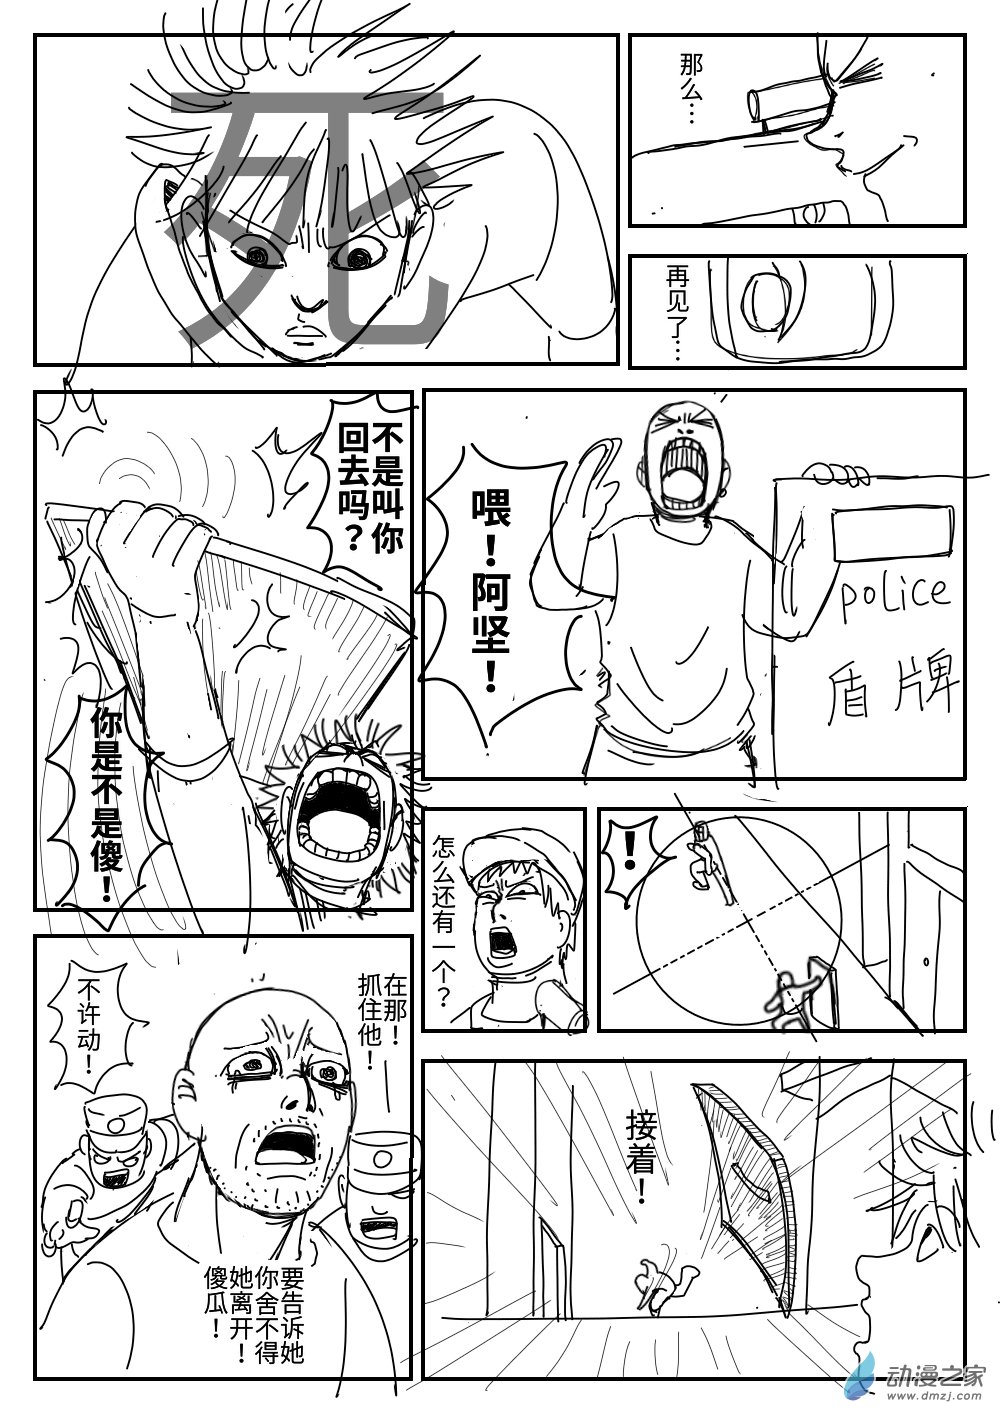 K神的短篇漫畫集 - 04 越獄 - 6